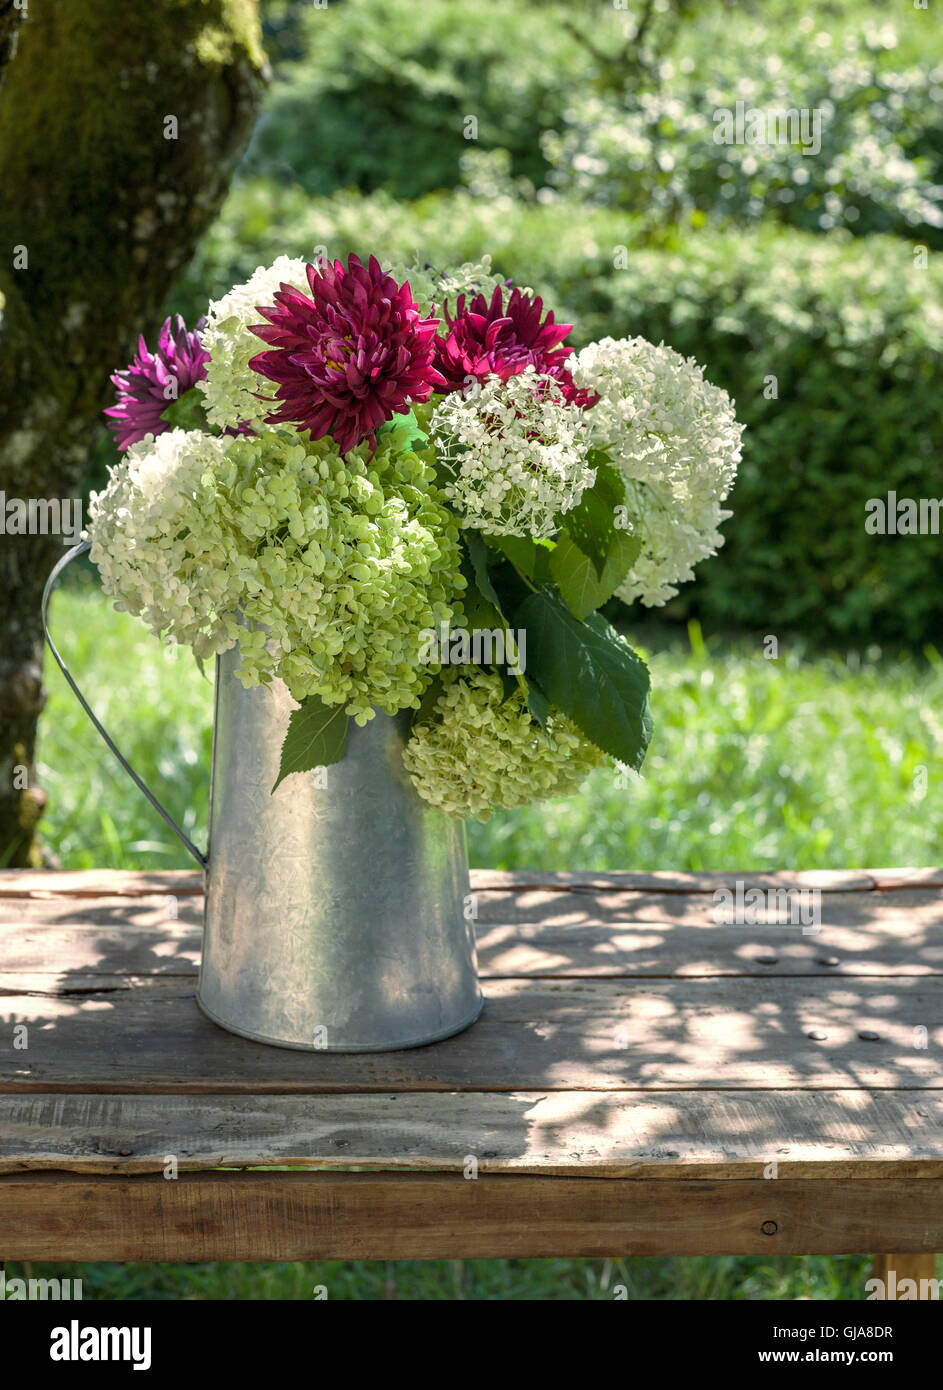 Hydrangeas on garden table Stock Photo